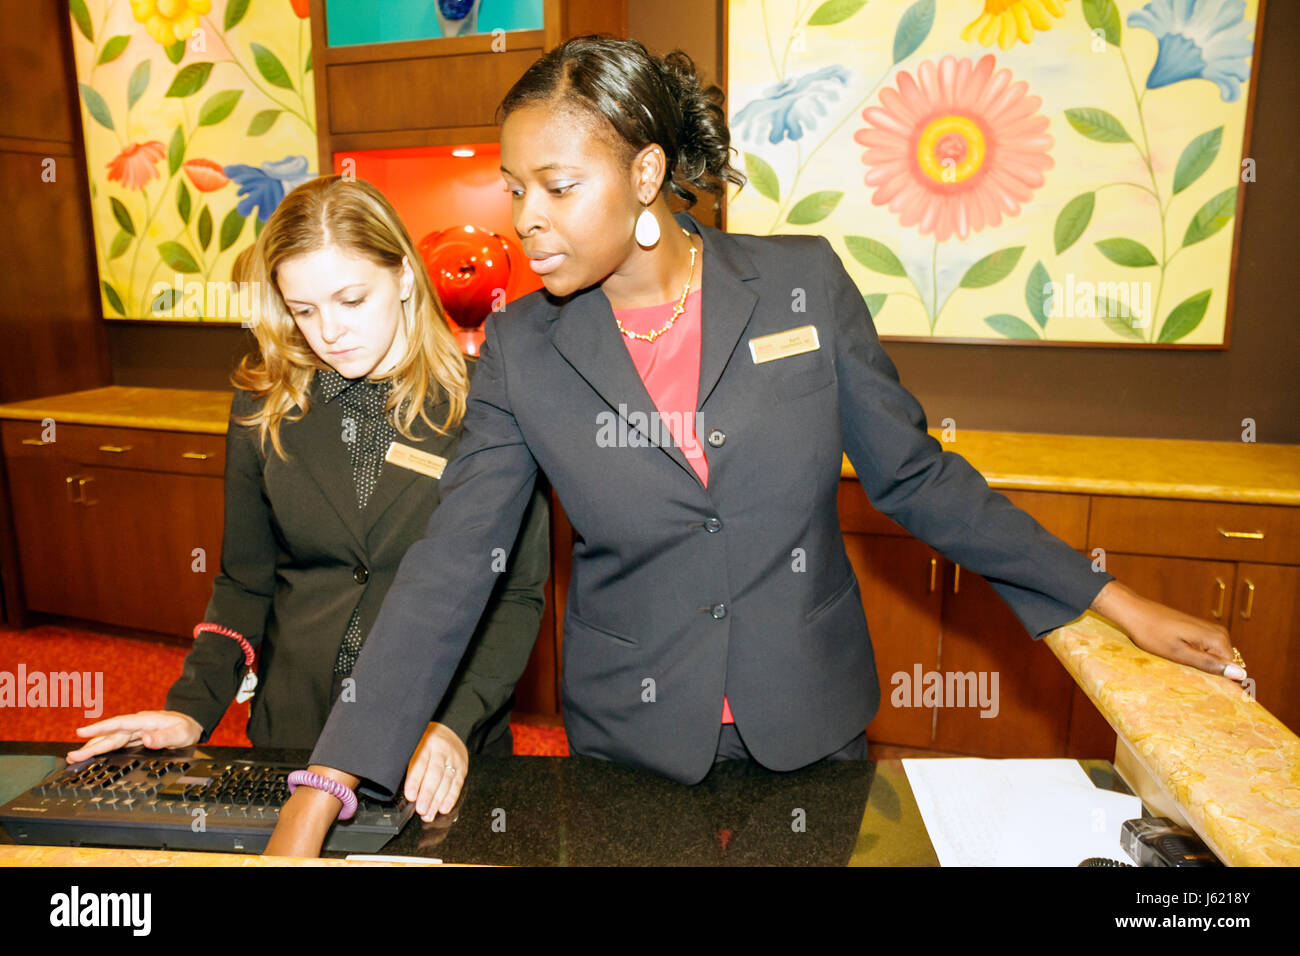 Charleston South Carolina, Marriott Charleston, Hotel, schwarze Frau Frauen Erwachsene Erwachsene, Angestellte, Rezeption, Check-in Reservierungen an der Rezeption Stockfoto